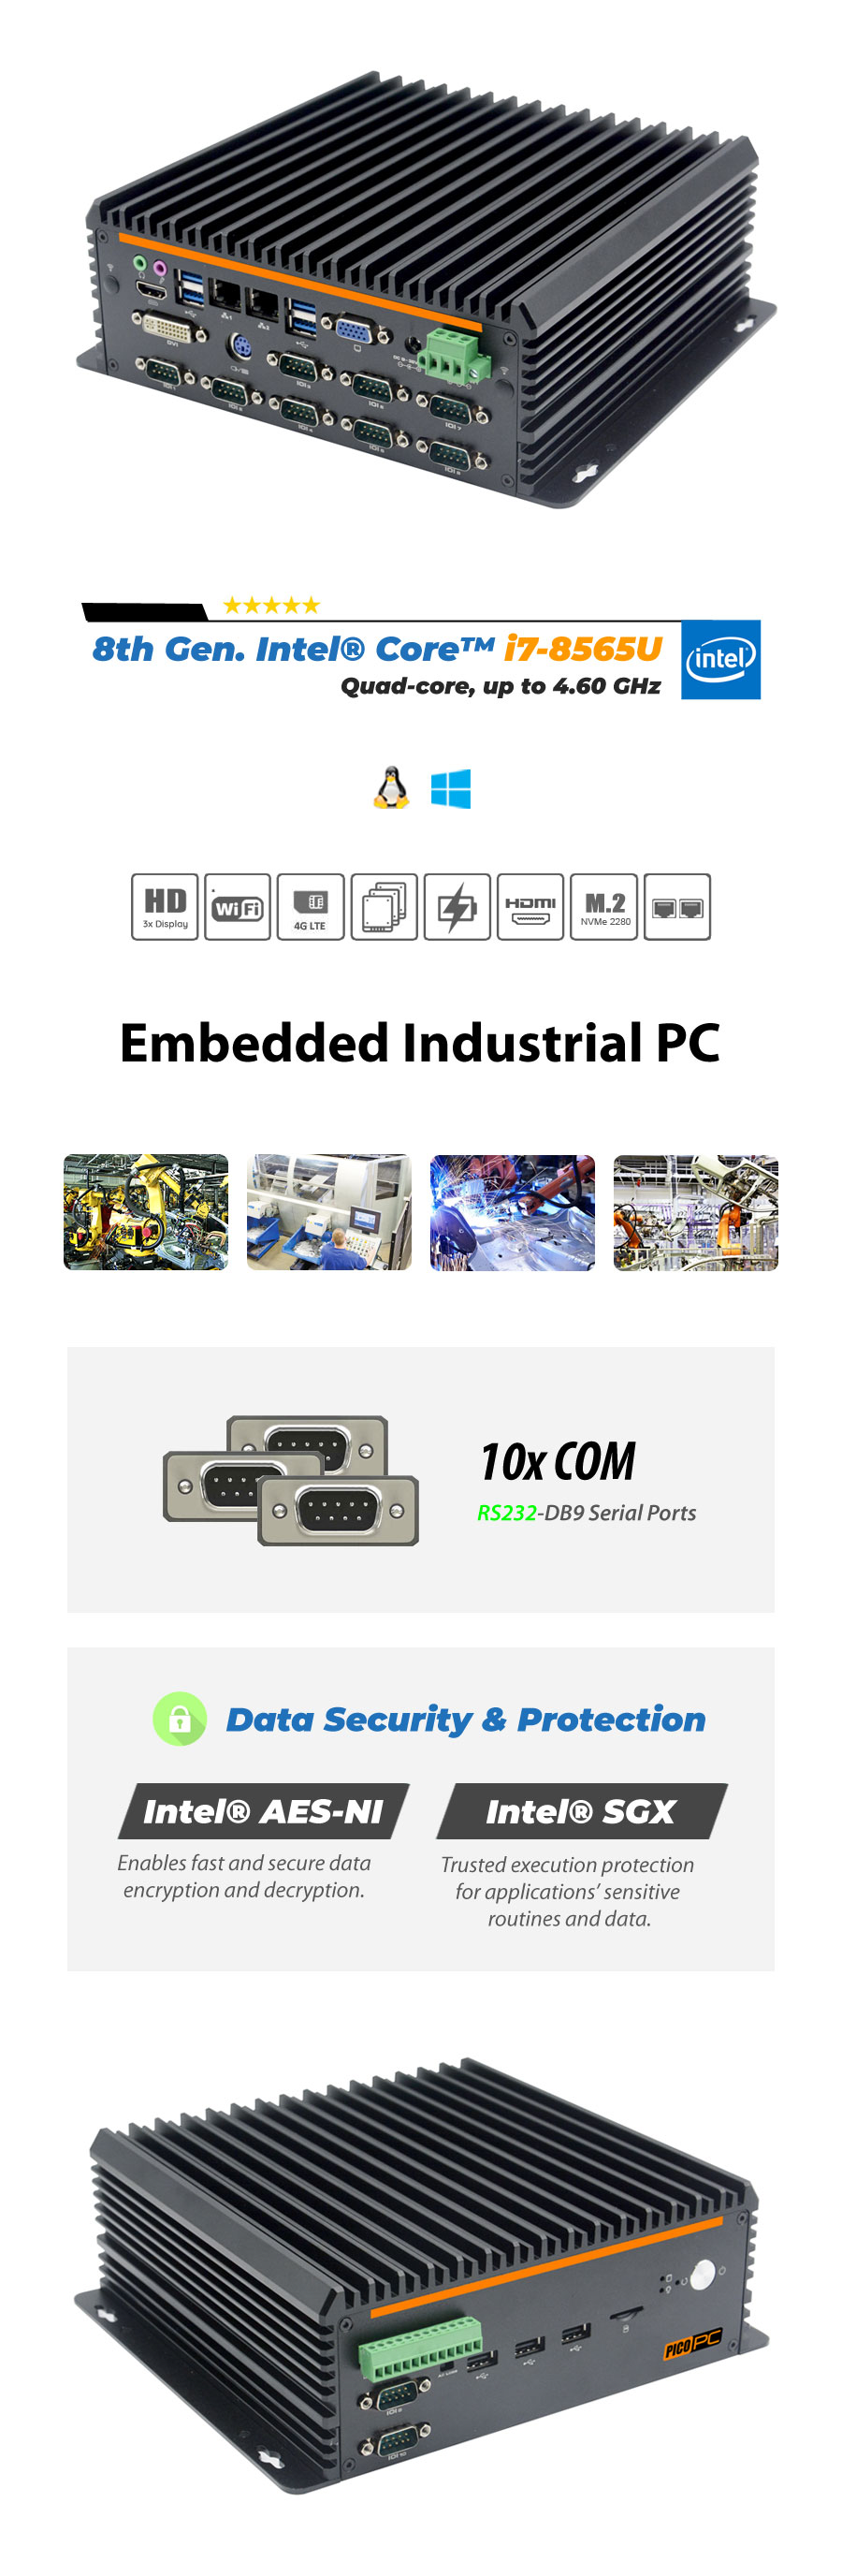 8th Gen. Intel® I7-8565U 10 COM Fanless Industrial Mini PC